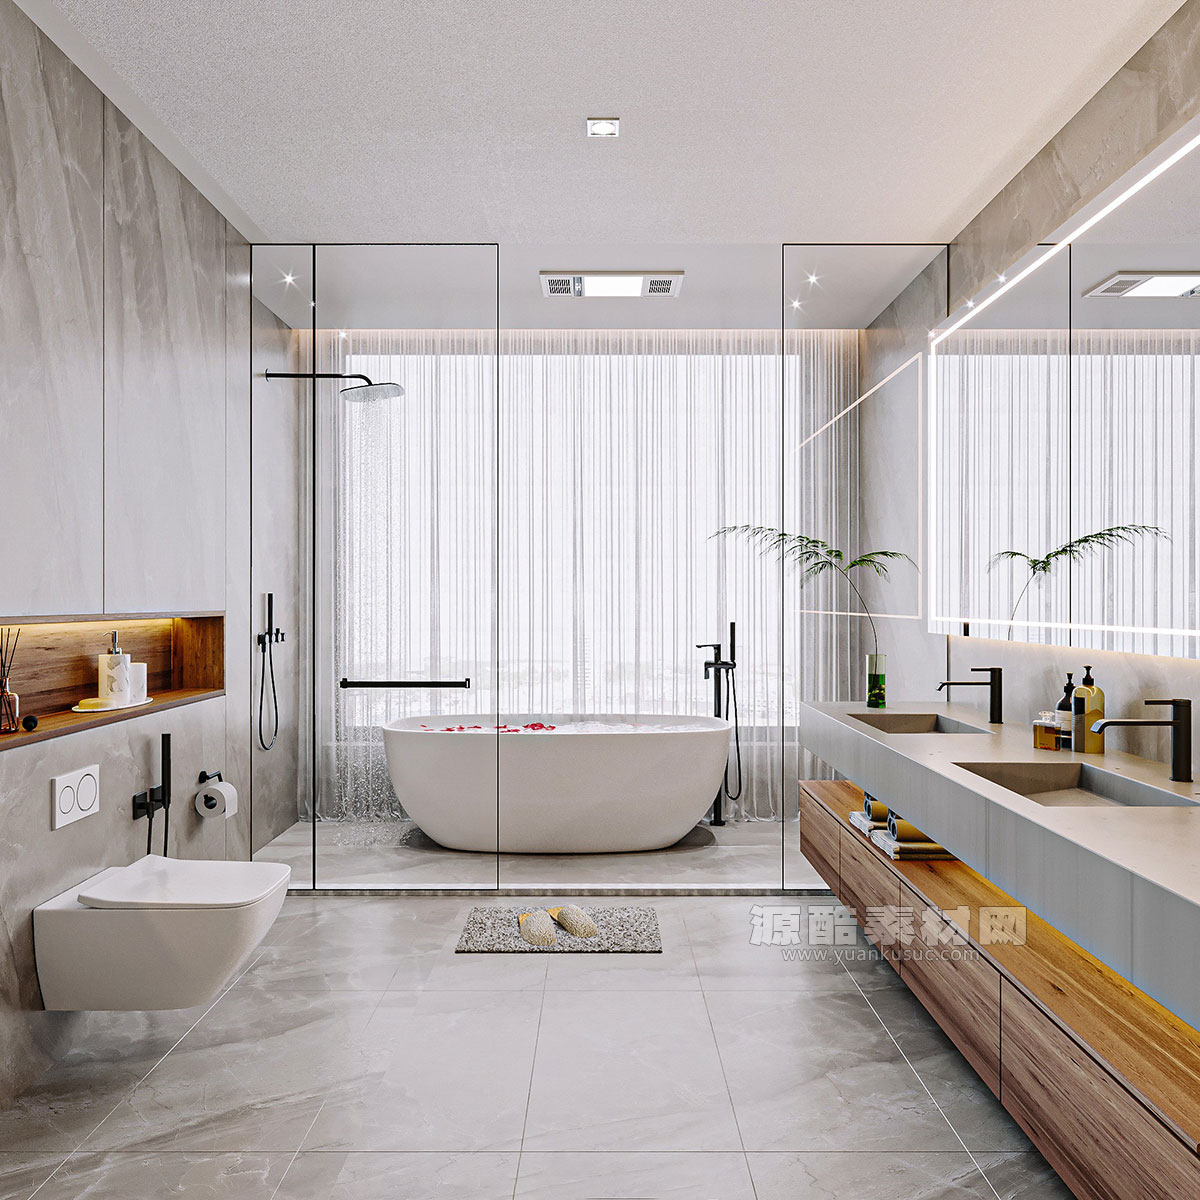 C4D工程-浴室场景渲染工程洗手间模型浴缸马桶C4D模型下载